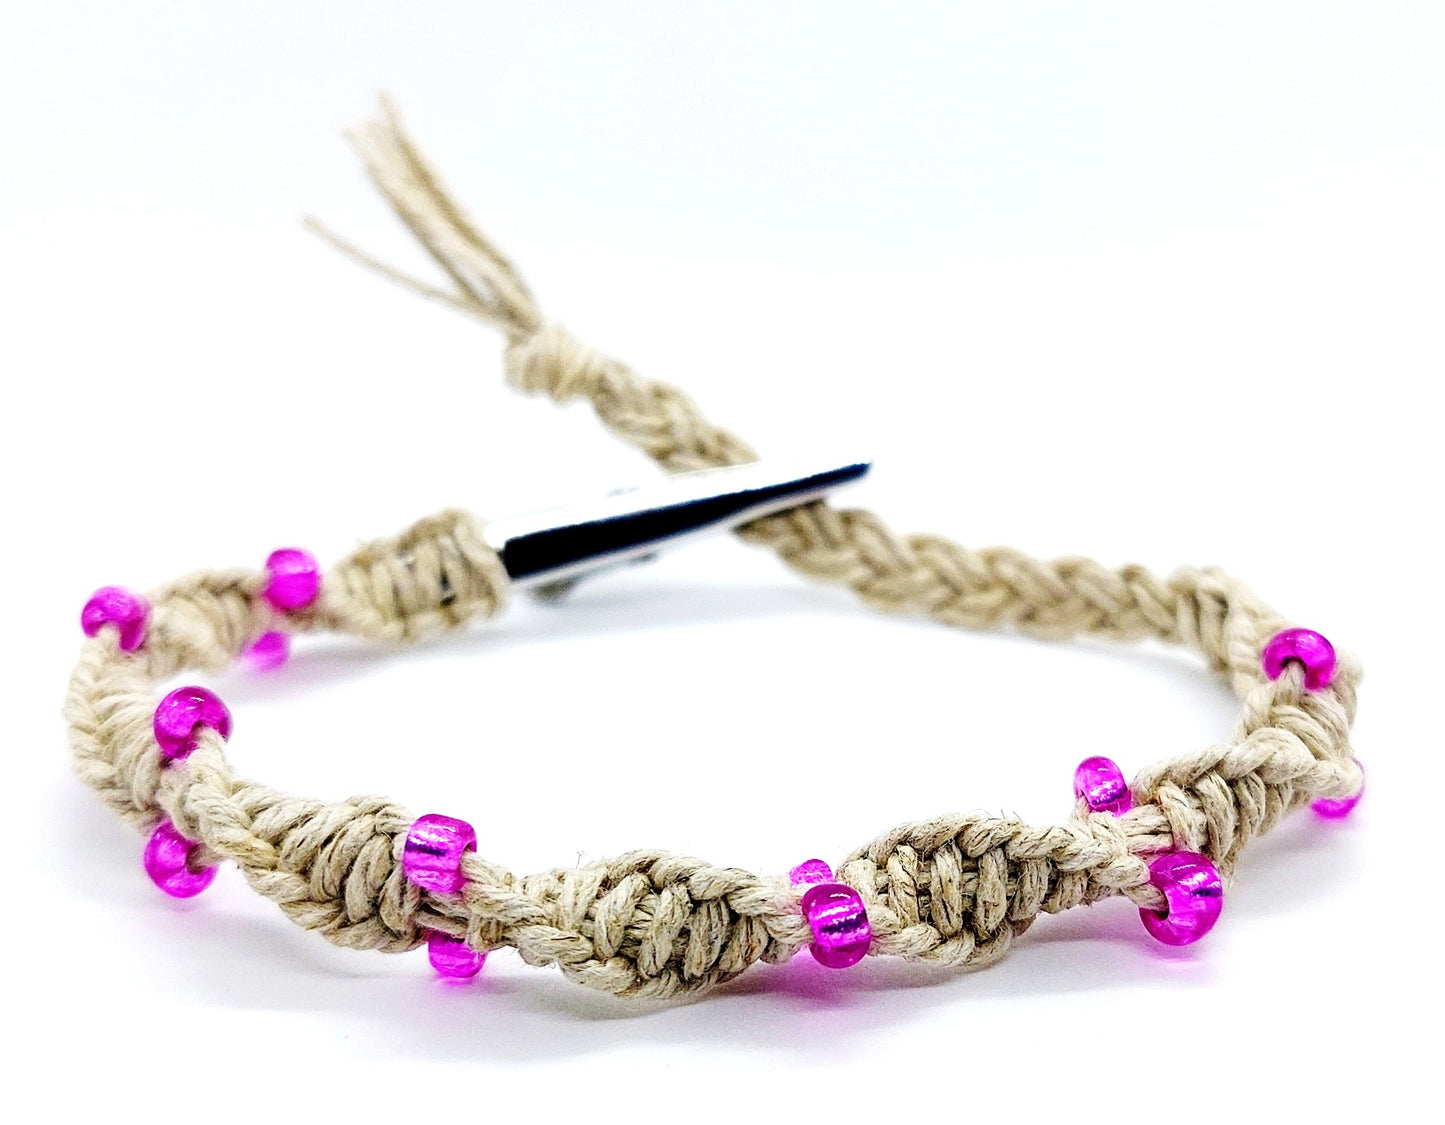 Twisted Hempnotic Adjustable beaded hemp bracelet